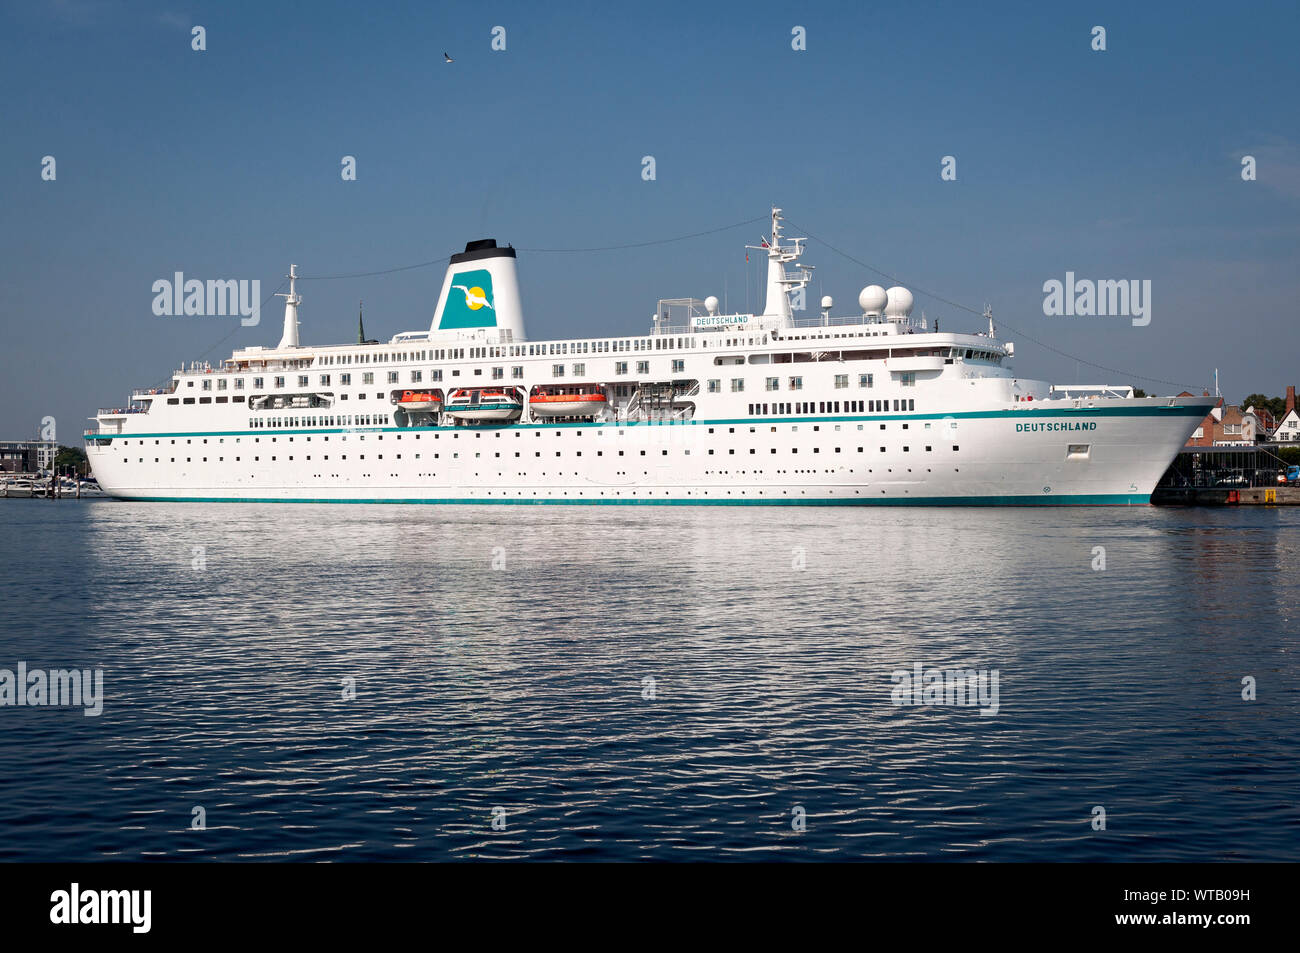 Cruise Ship 'Deutschland' at Travemünde, Schleswig Holstein, Germany. Stock Photo